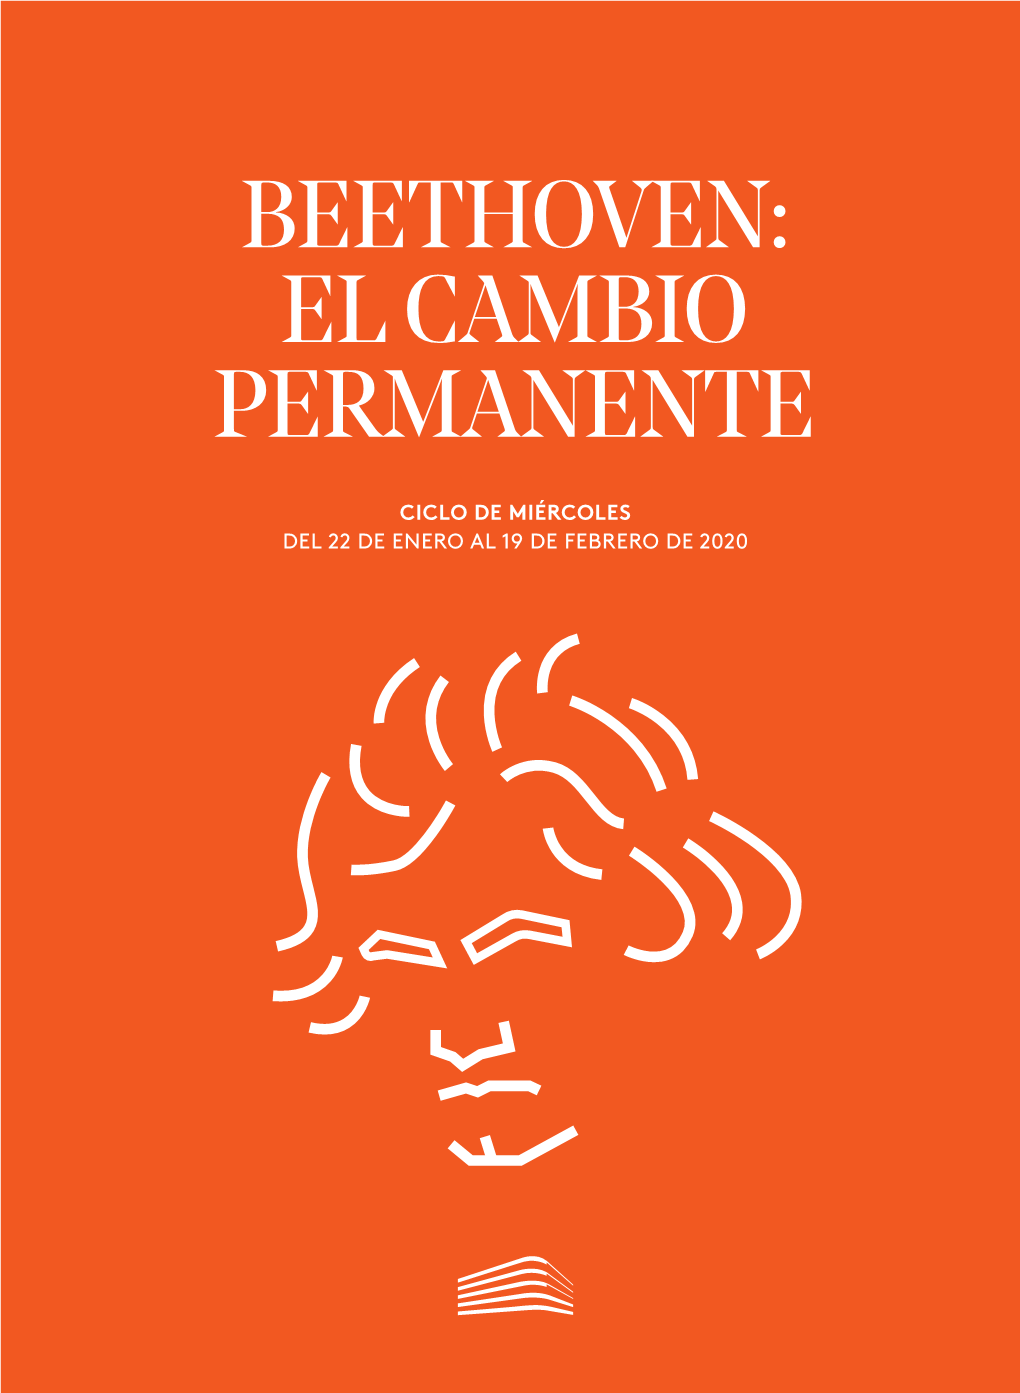 Beethoven: El Cambio Permanente